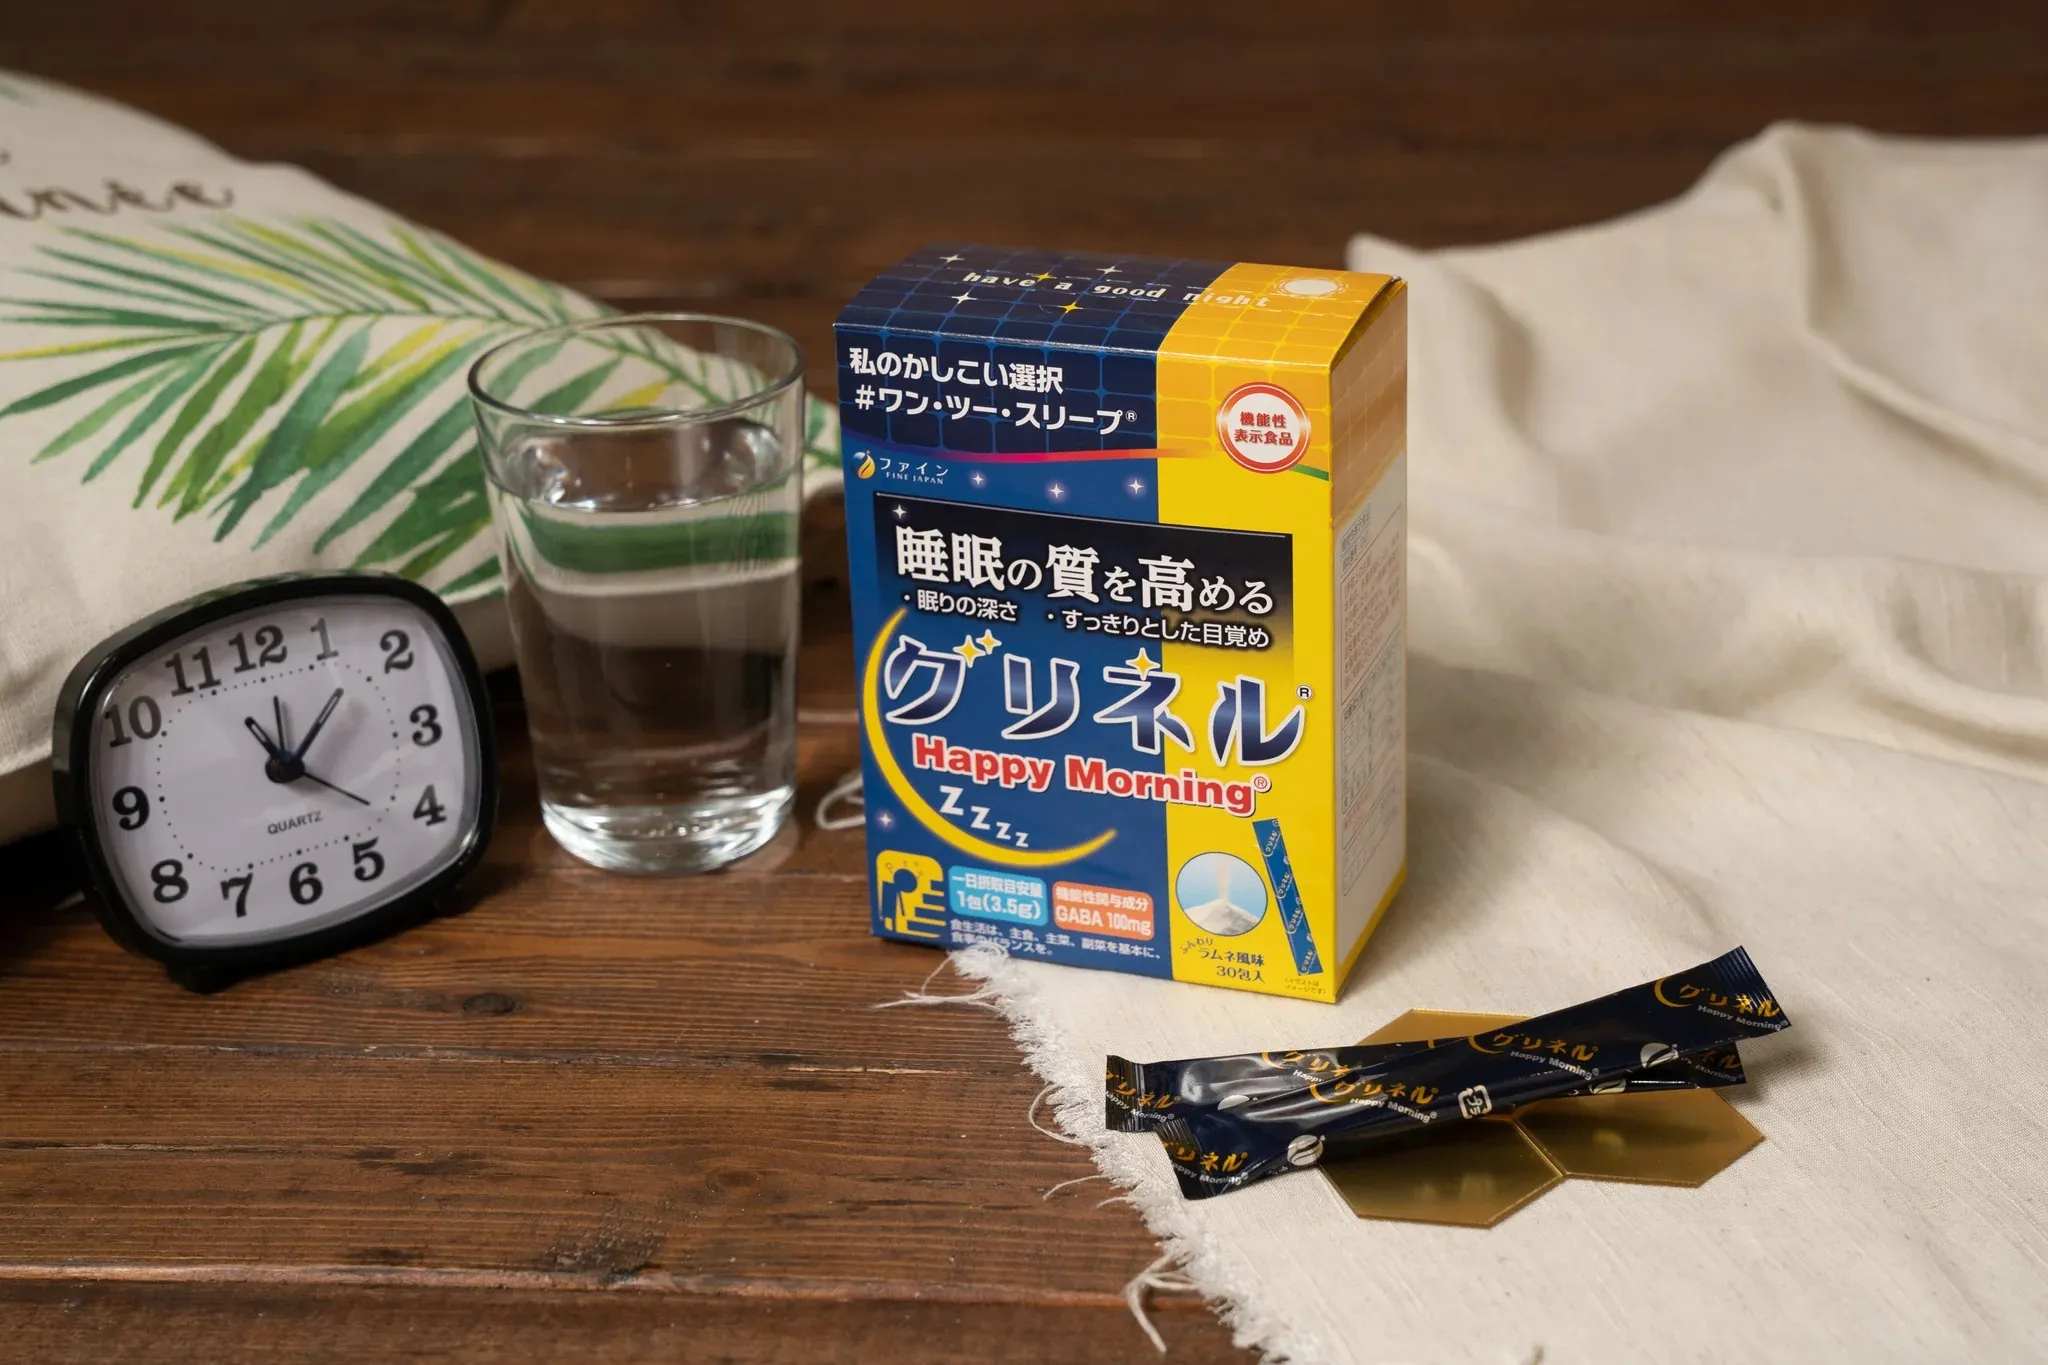 Комплекс для улучшения качества сна и повышения мозговой активности с глицином Fine Japan Neo Glycine 4000 Happy Morning